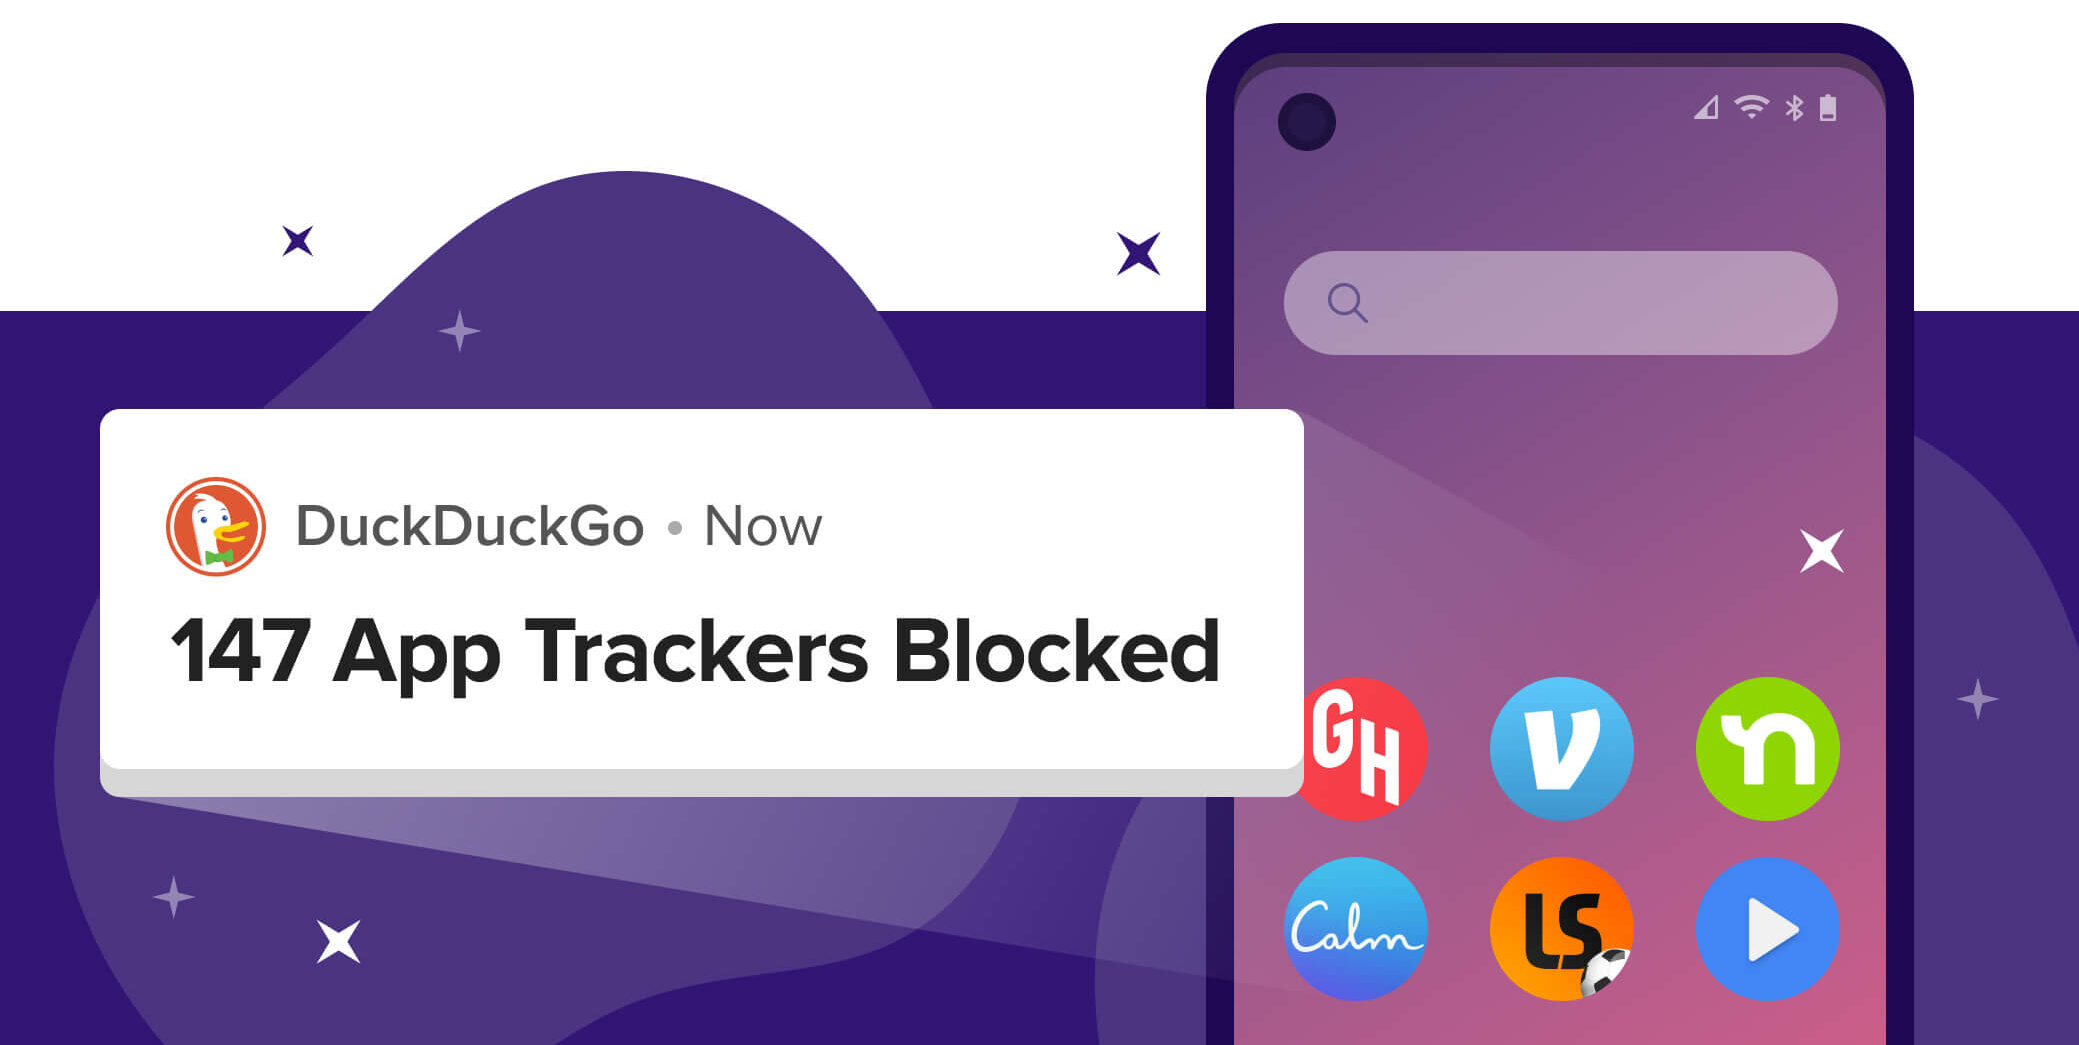 Cara Memblokir Aplikasi Tracking di Android Dengan DuckDuckGo